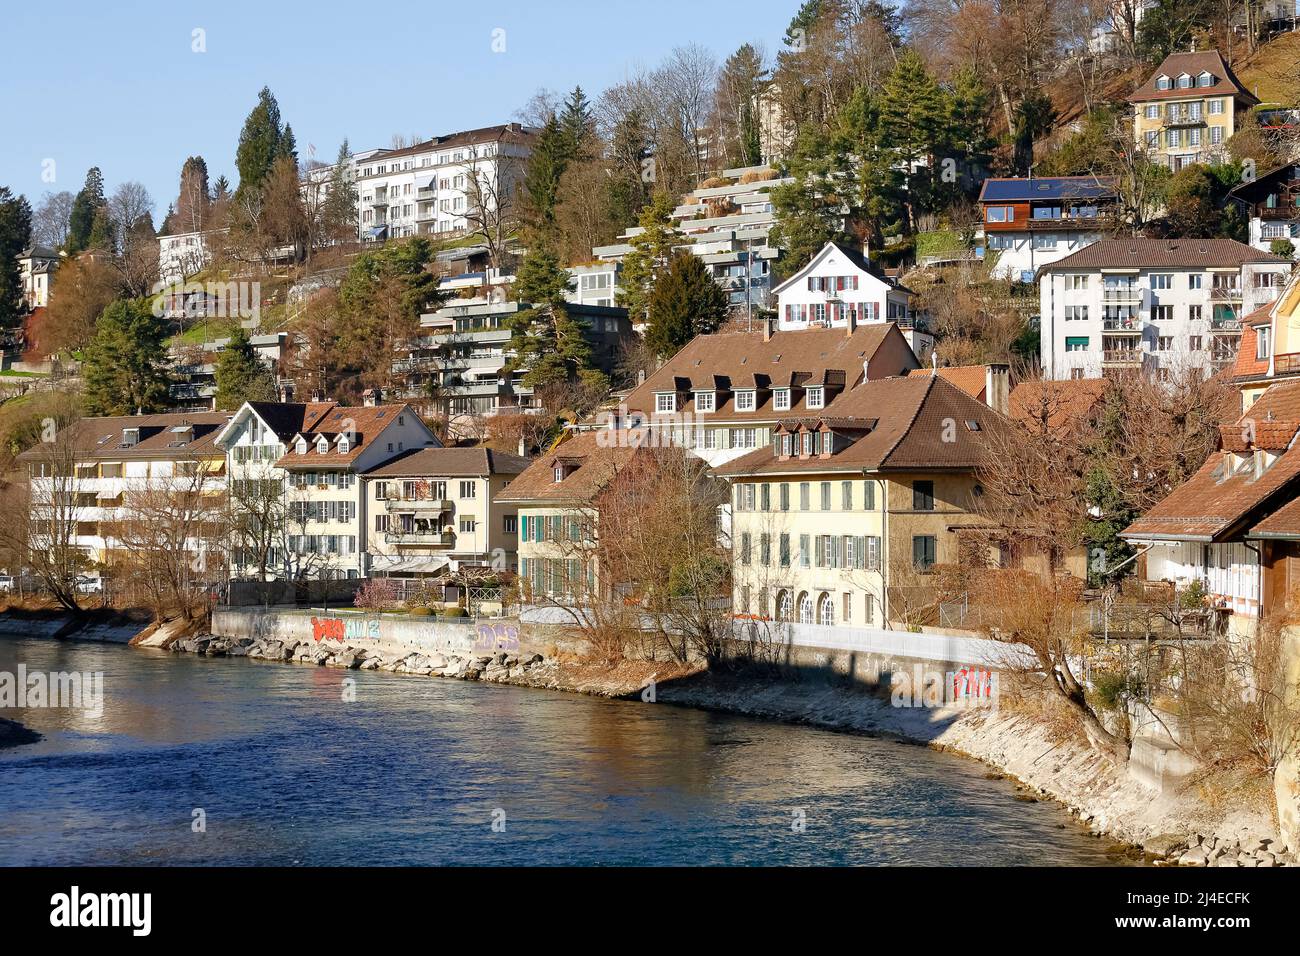 Berna, Suiza - 26 de diciembre de 2015: Las casas en la ciudad a orillas del río Aare son visibles ligeramente en la distancia es uno de los residentes Foto de stock